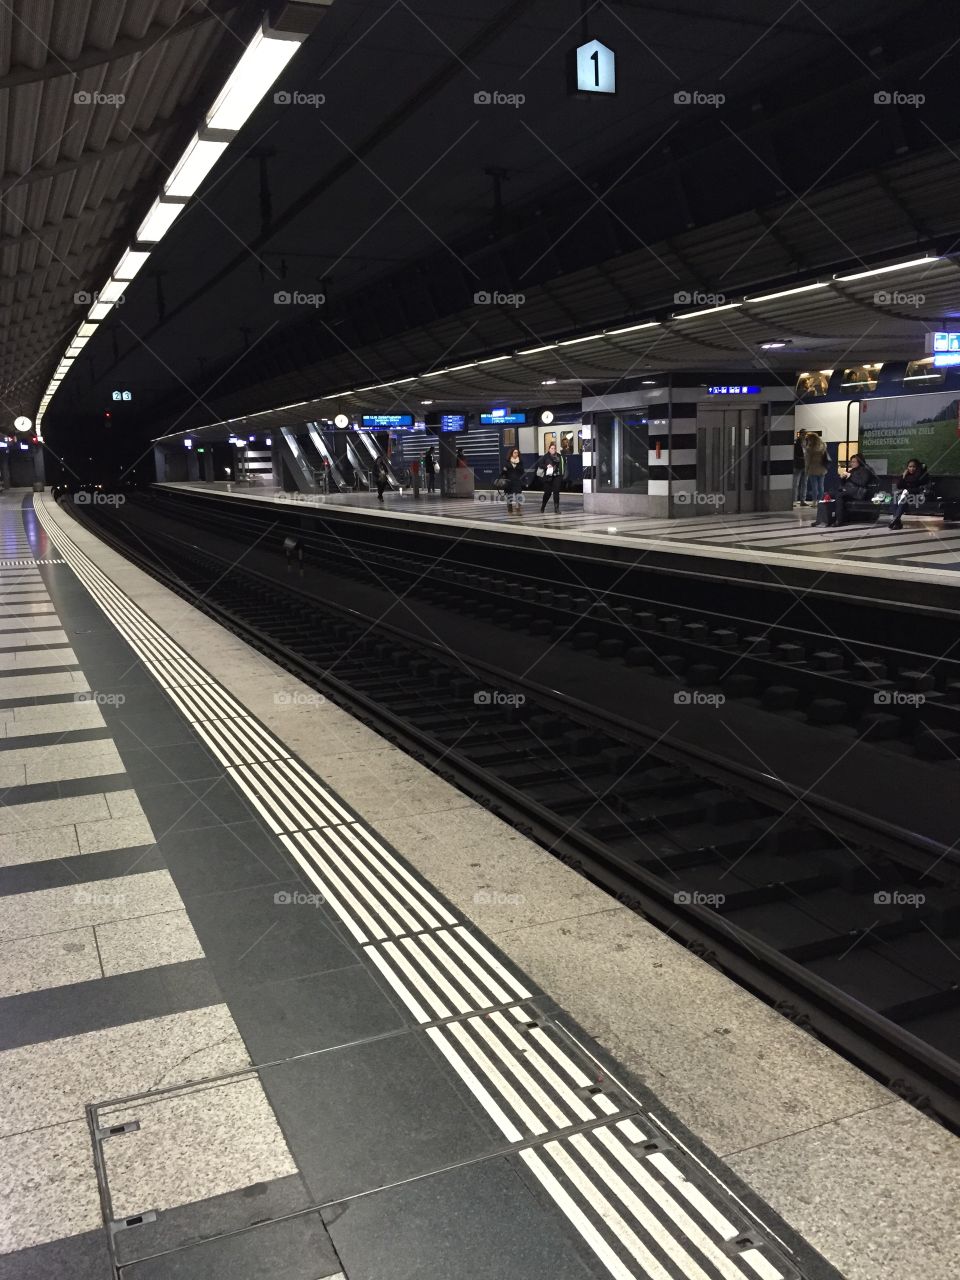 Waiting for the next train - Railway Station in Zurich, Switzerland